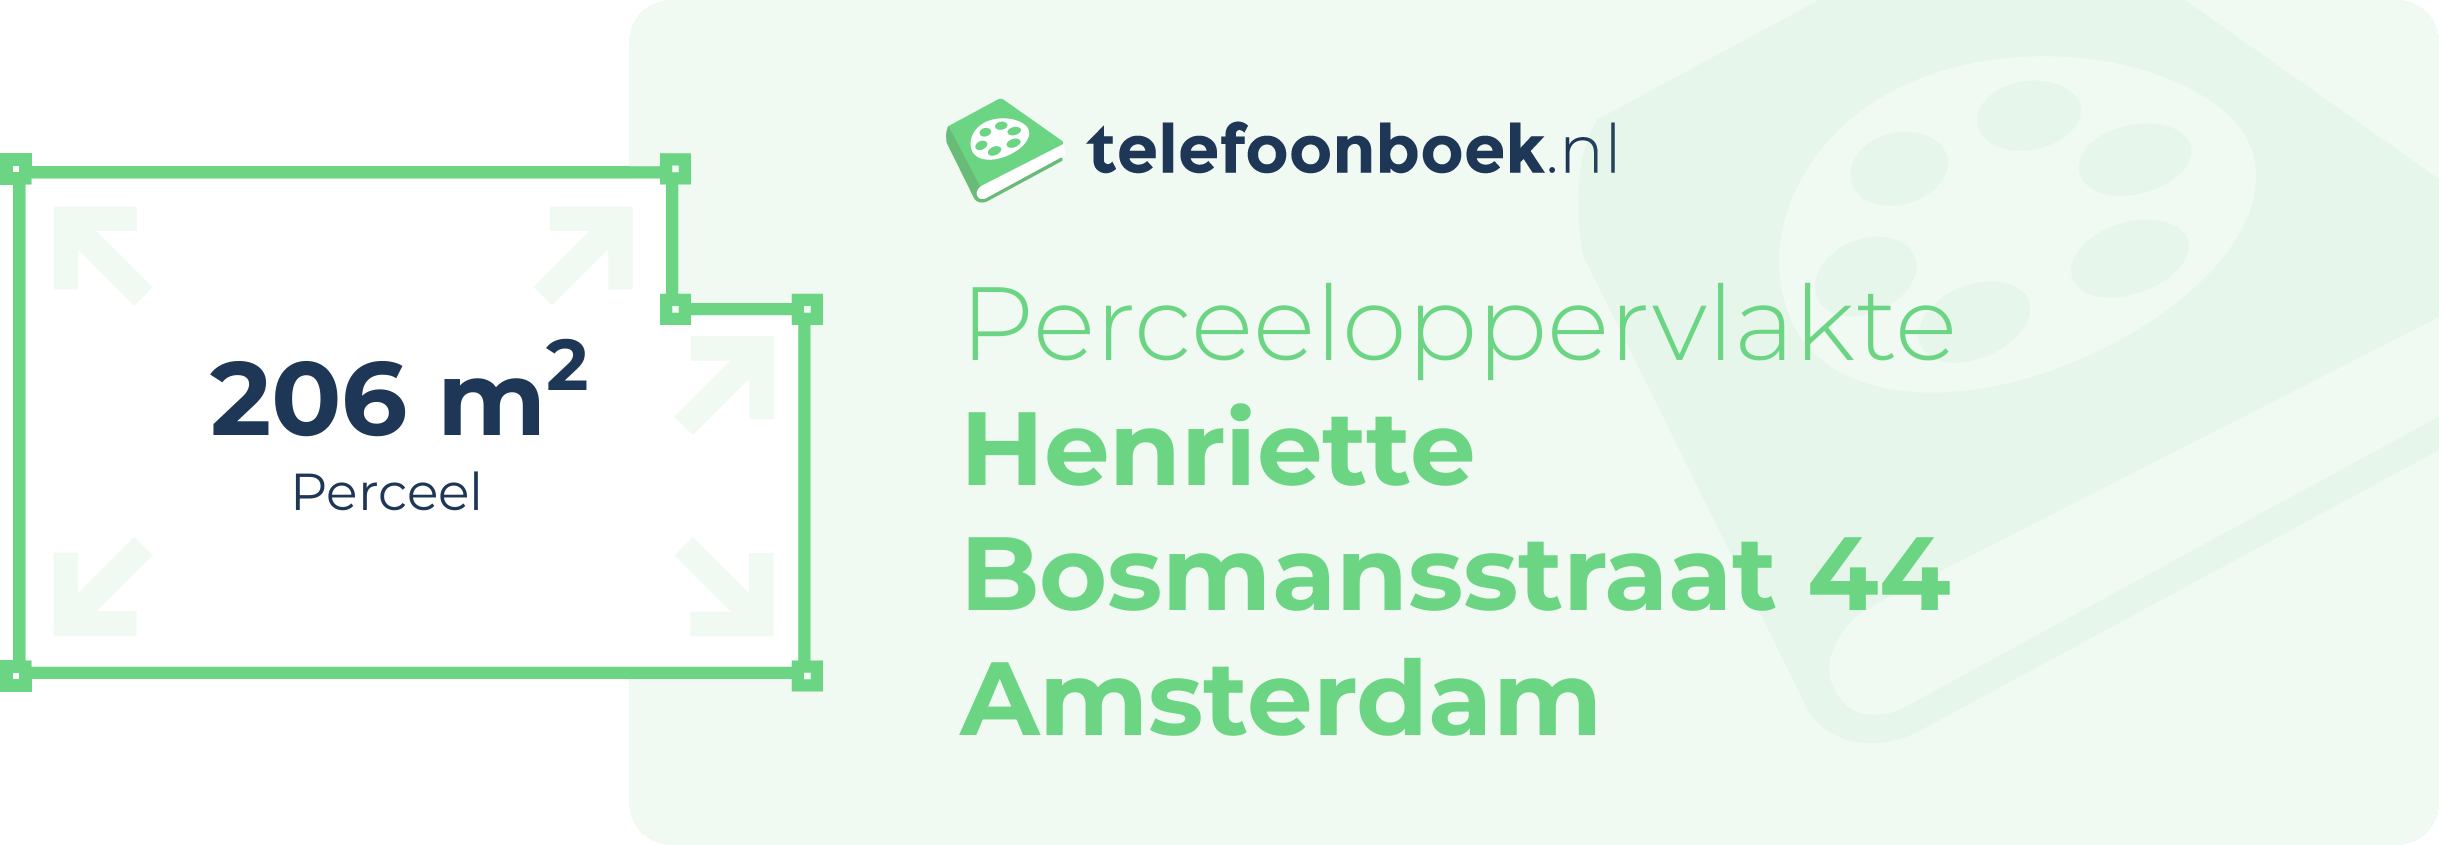 Perceeloppervlakte Henriette Bosmansstraat 44 Amsterdam